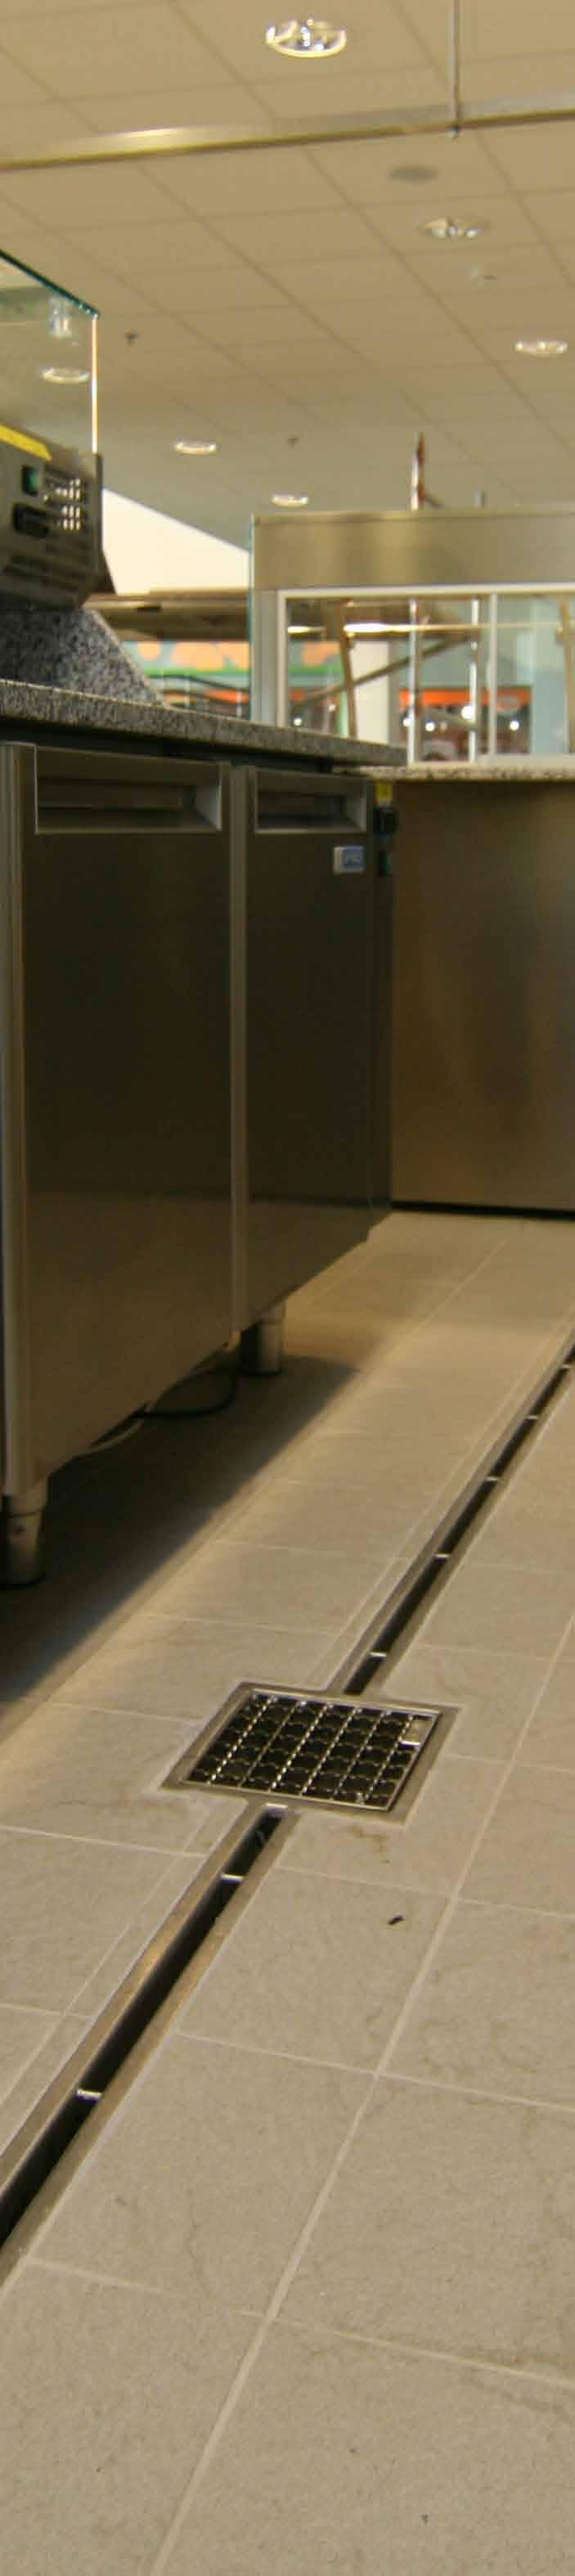 Rošty jsou umístěny po celé délce žlabového systému. Zákazník může vytvořit celkový vzhled podlahy výběrem správného provedení roštu.